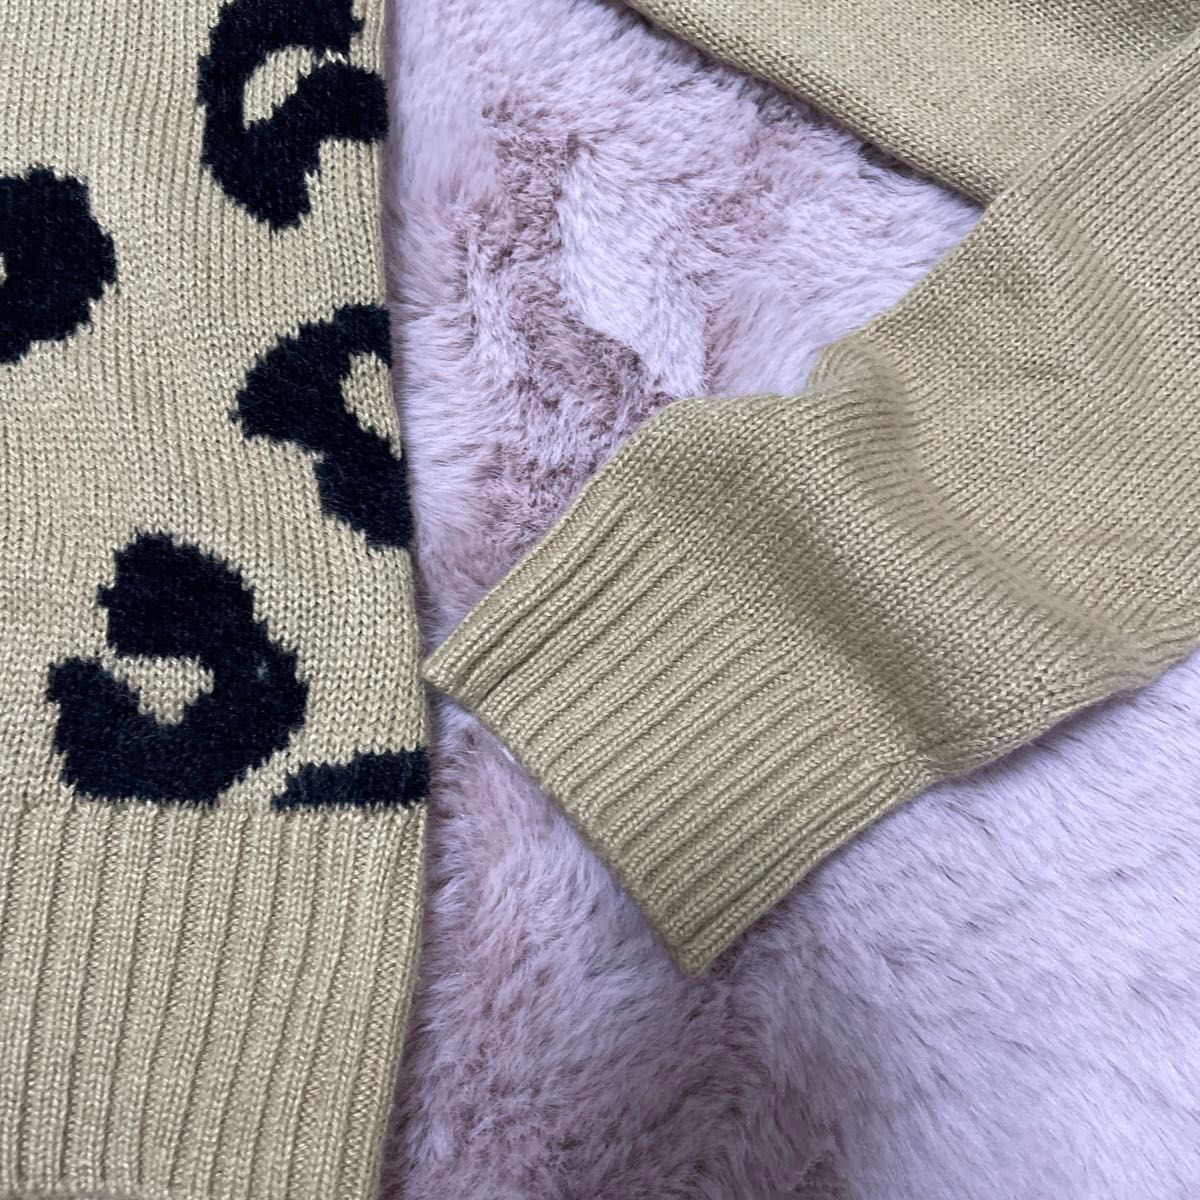 ムルーア　MURUA ニットセーター　レオパード柄　ショートセーター　新品同様　フリーサイズ